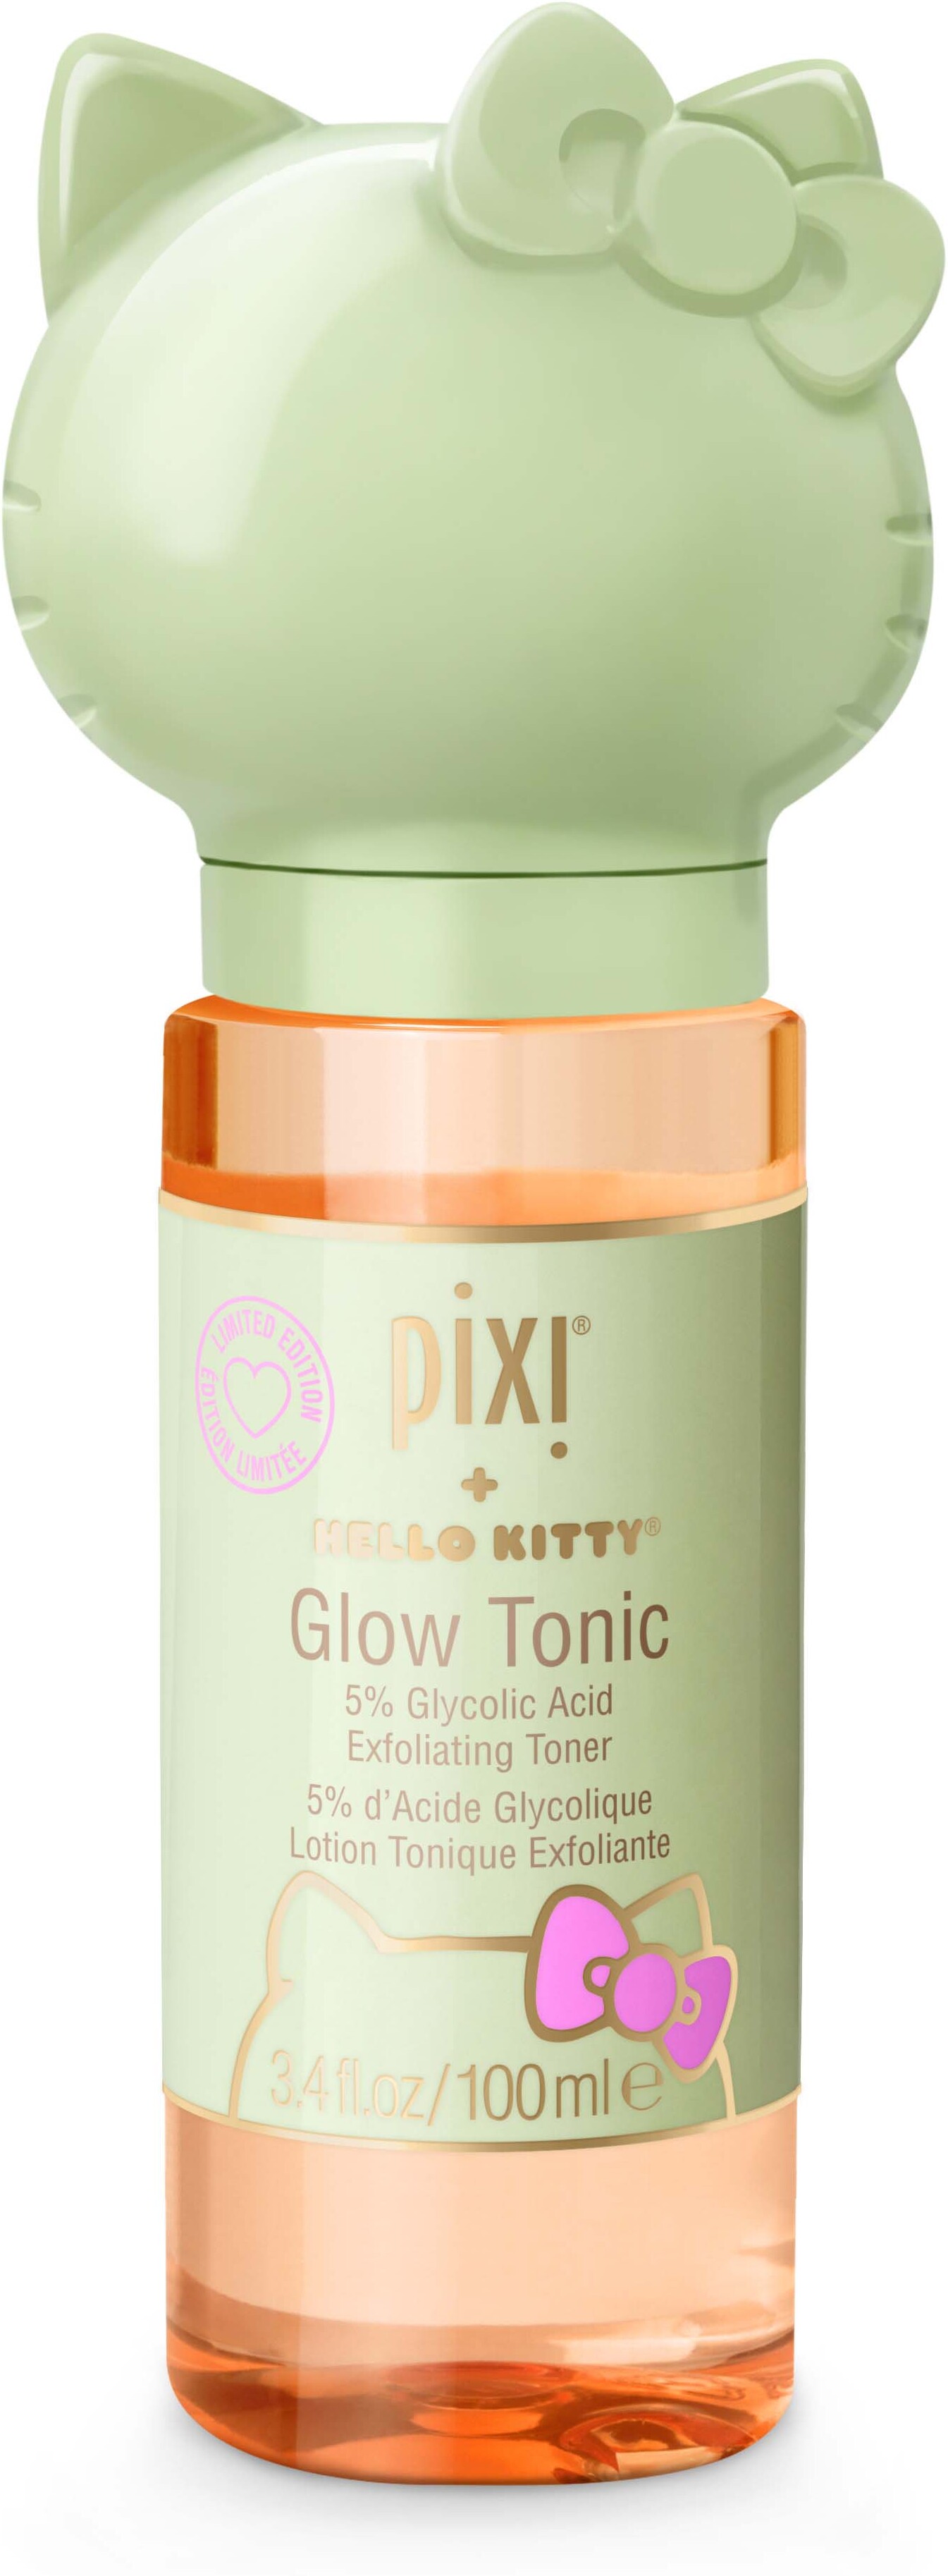 PIXI Pixi + Hello Kitty Glow Tonic 100 ml